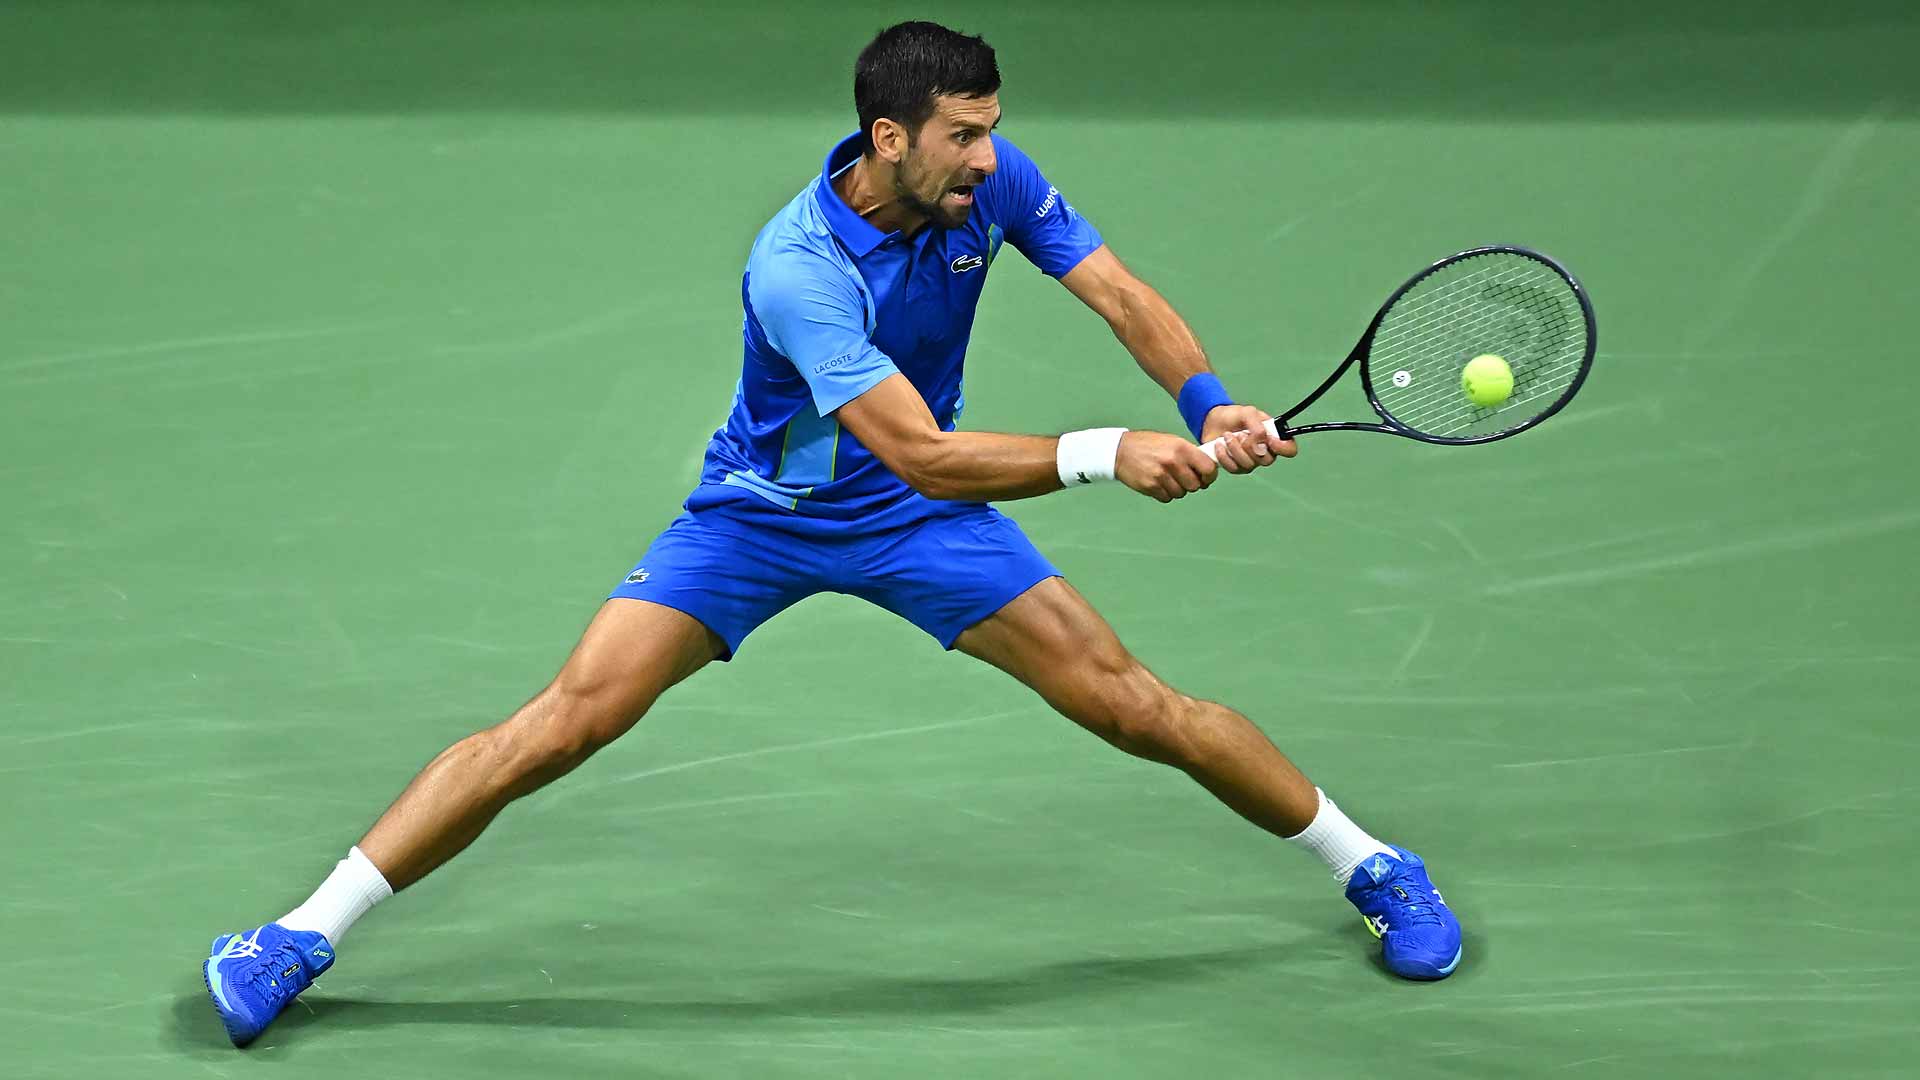 Novak Djokovic aseguró su presencia en la semifinal No. 47 en un Grand Slam, récord de la categoría.